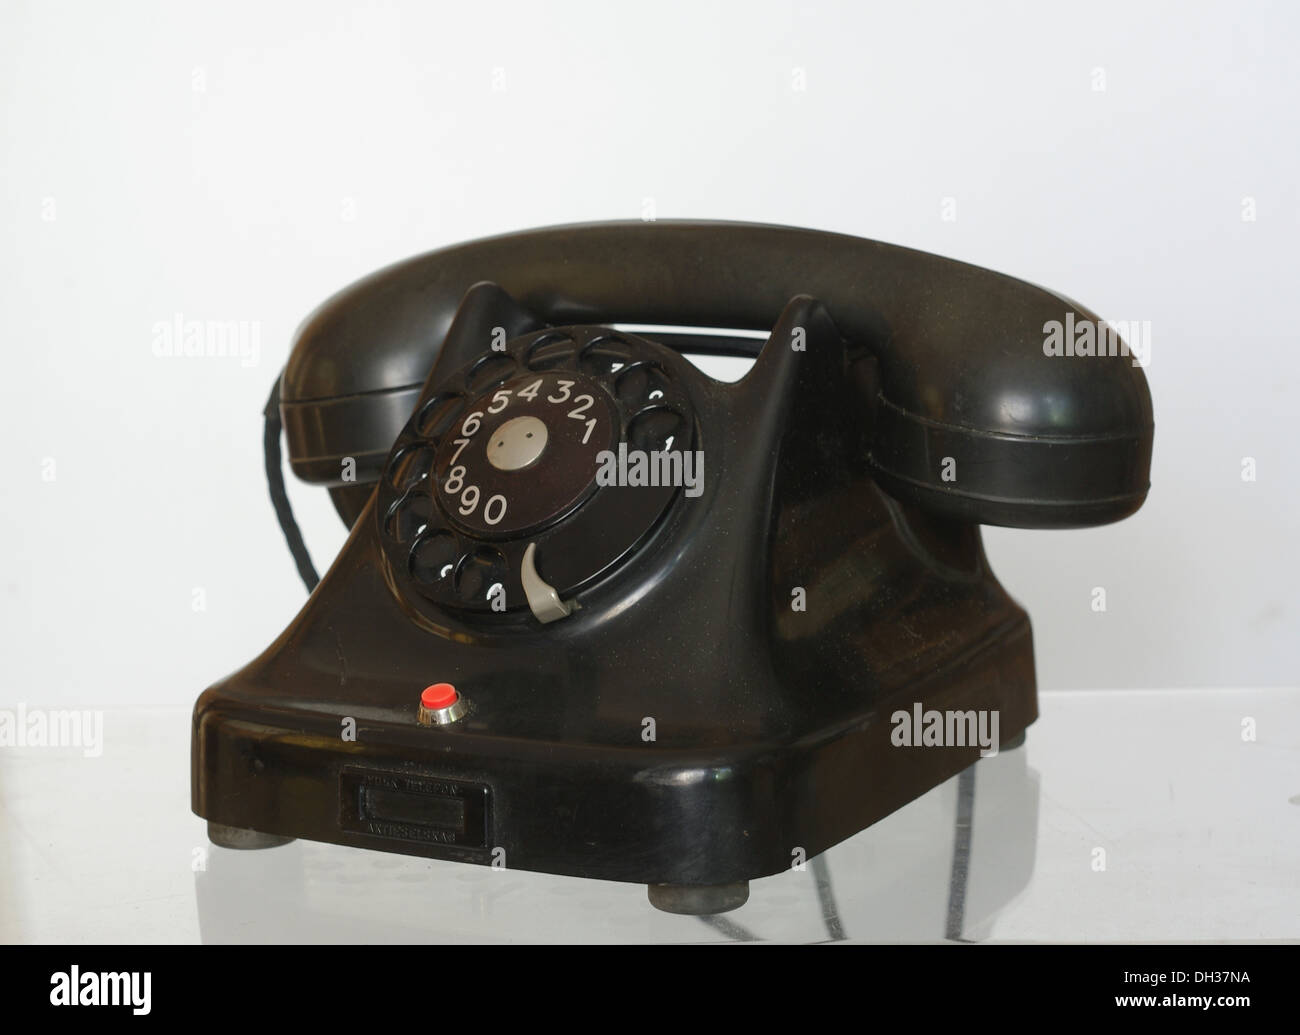 old black telephone on white background Stock Photo